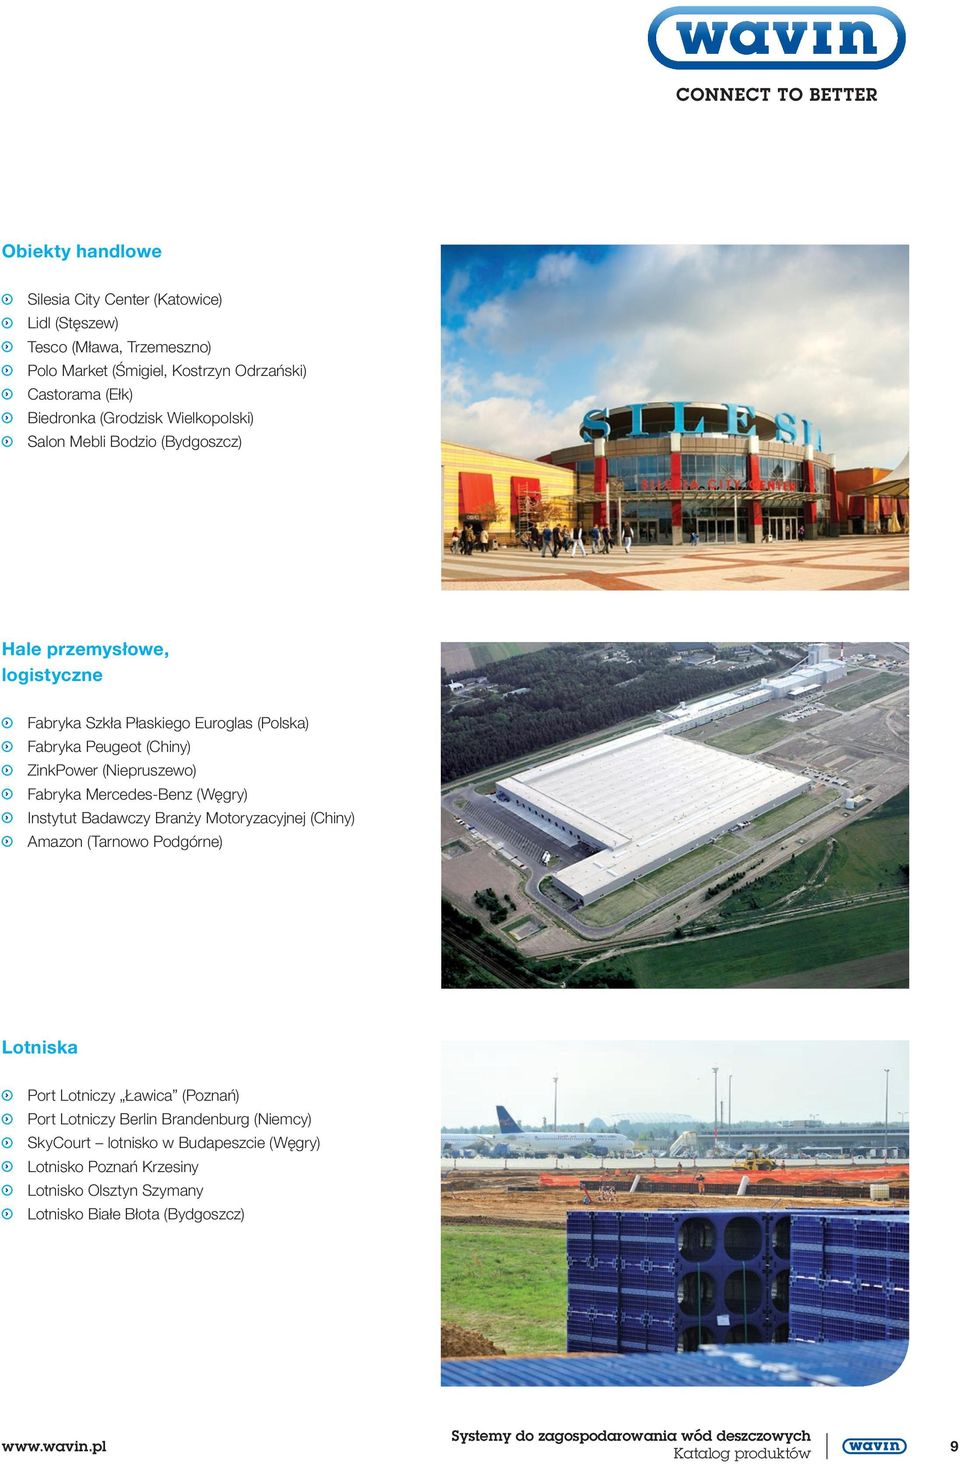 (Niepruszewo) Fabryka Mercedes-Benz (Węgry) Instytut Badawczy Branży Motoryzacyjnej (Chiny) Amazon (Tarnowo Podgórne) Lotniska Port Lotniczy Ławica (Poznań) Port